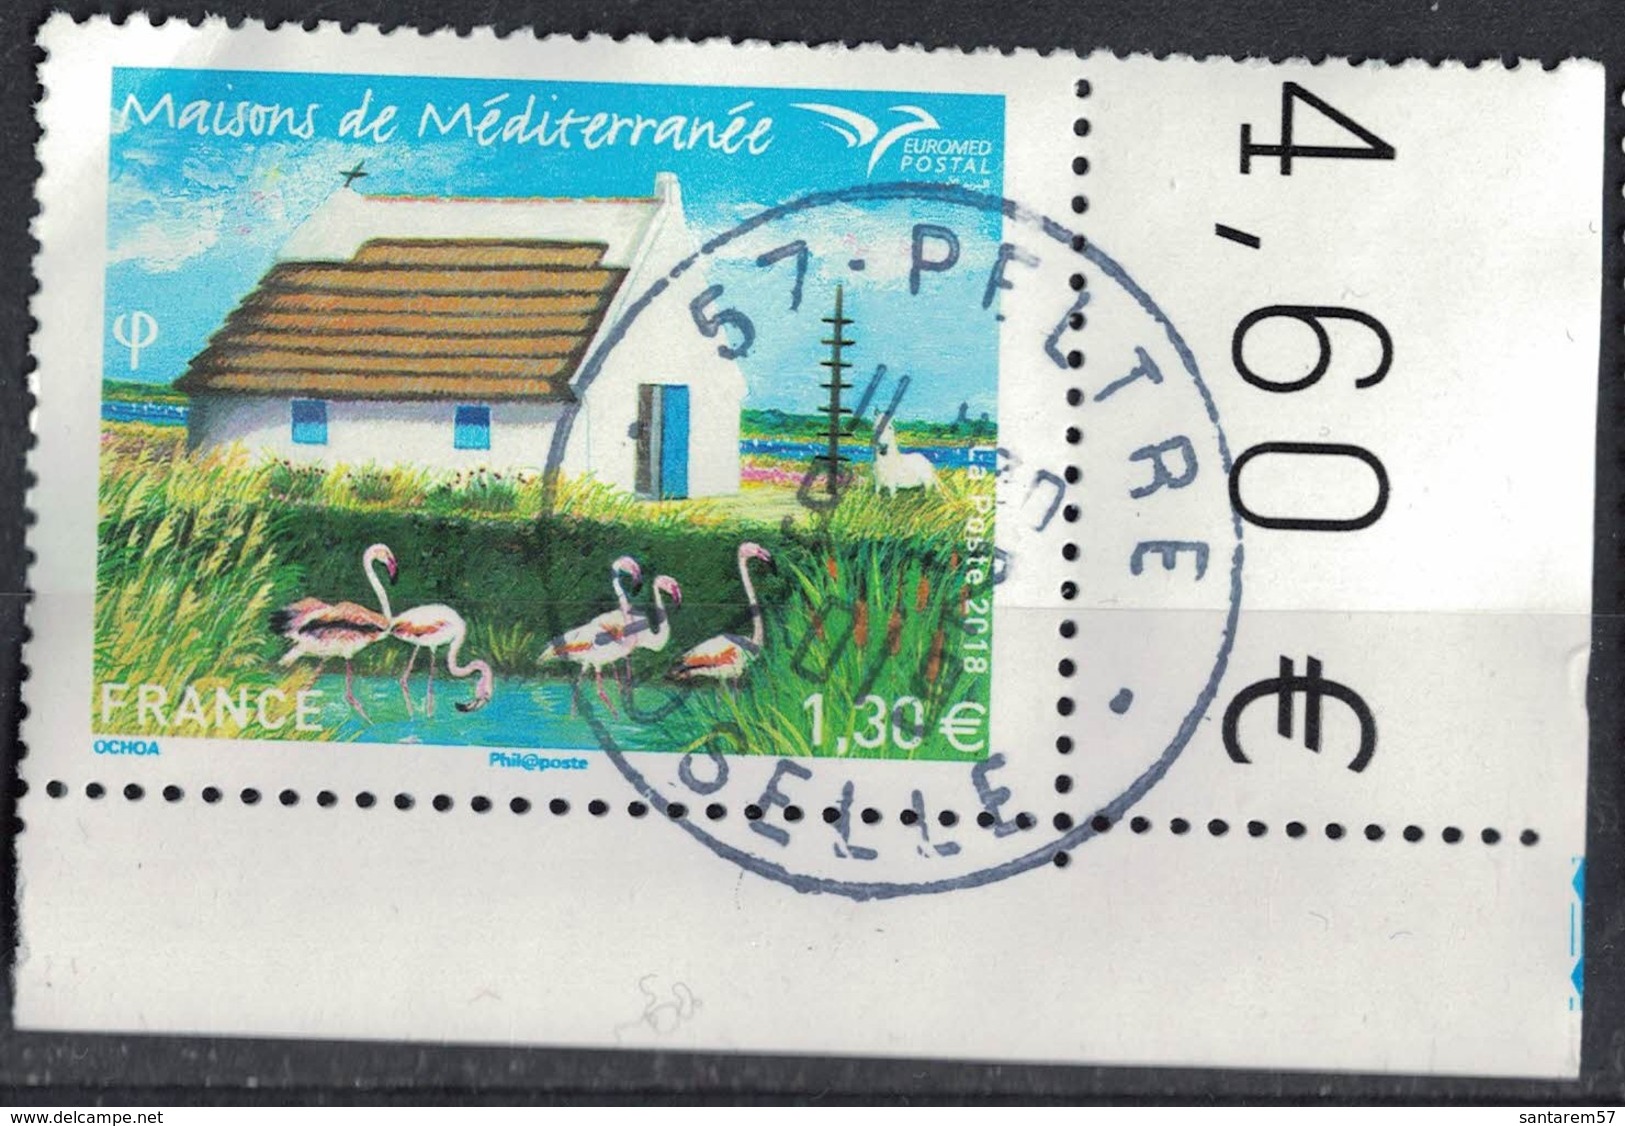 France 2018 Oblitéré Rond Daté Used Euromed Postal Maisons De Méditerranée SU - Oblitérés